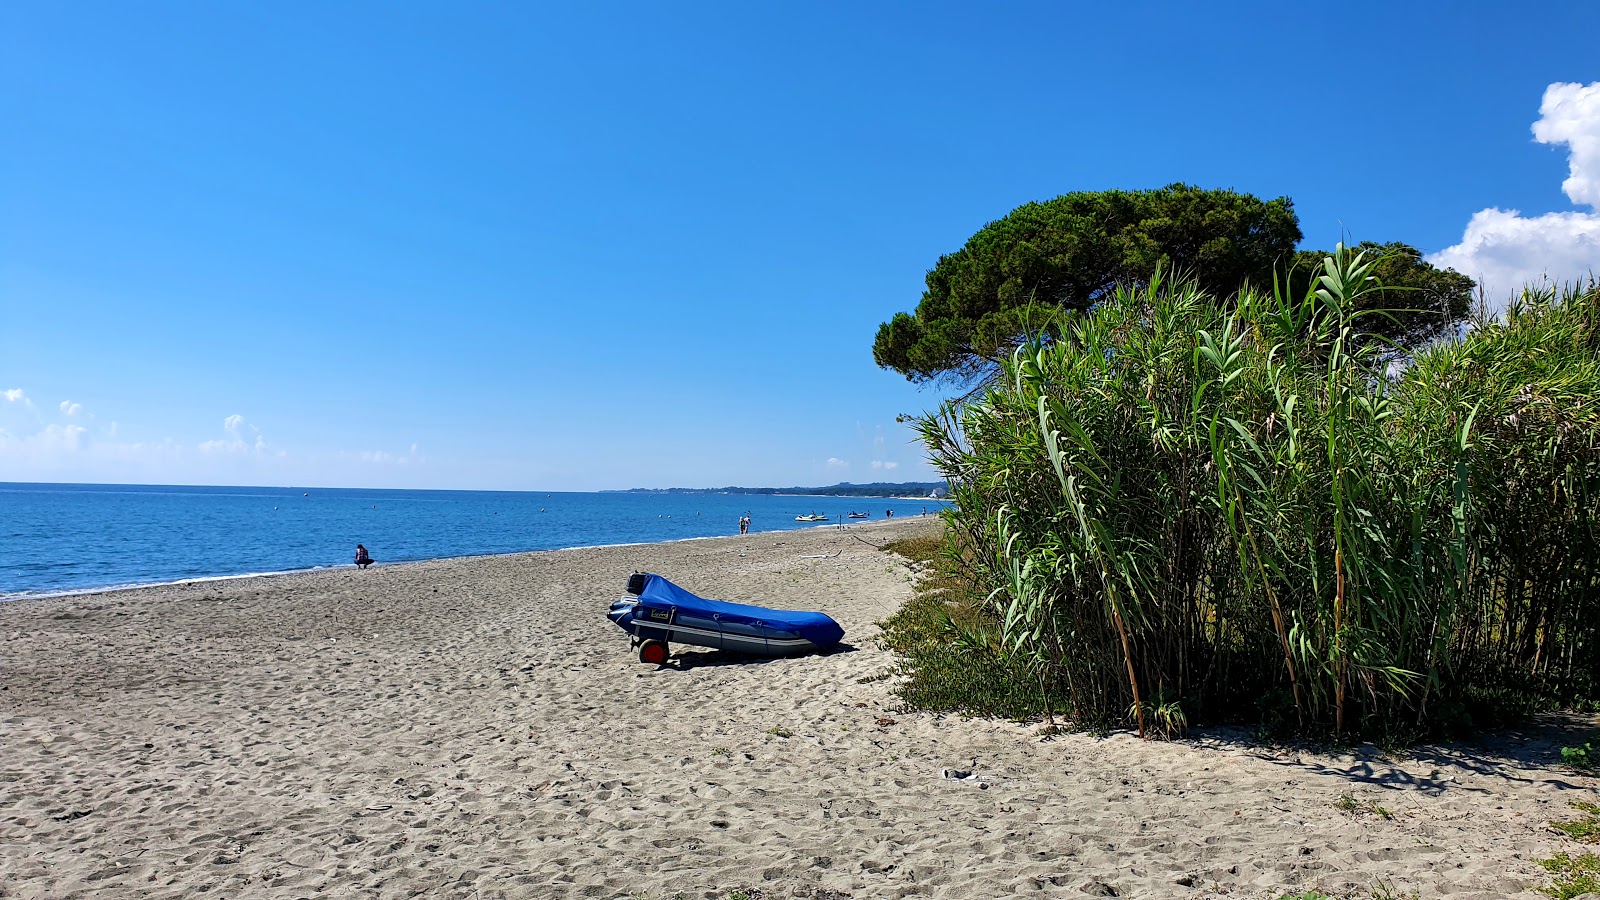 Fotografie cu Ponticchio beach - locul popular printre cunoscătorii de relaxare